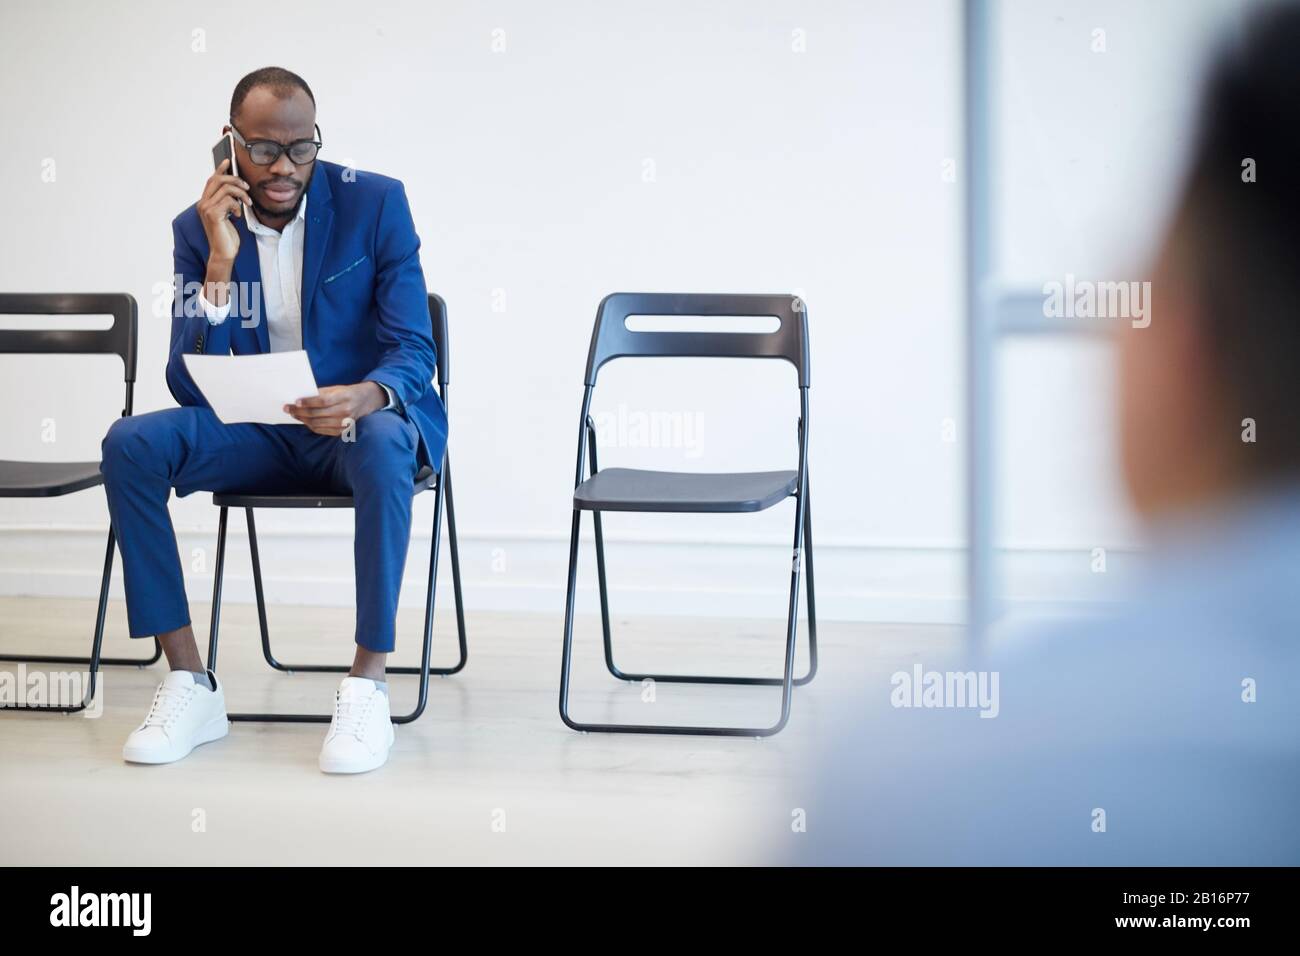 Komplettes Portrait eines modernen afroamerikanischen Mannes, der auf ein Bewerbungsgespräch hinter der Glaswand wartet und per Telefon spricht, Copy-Space Stockfoto